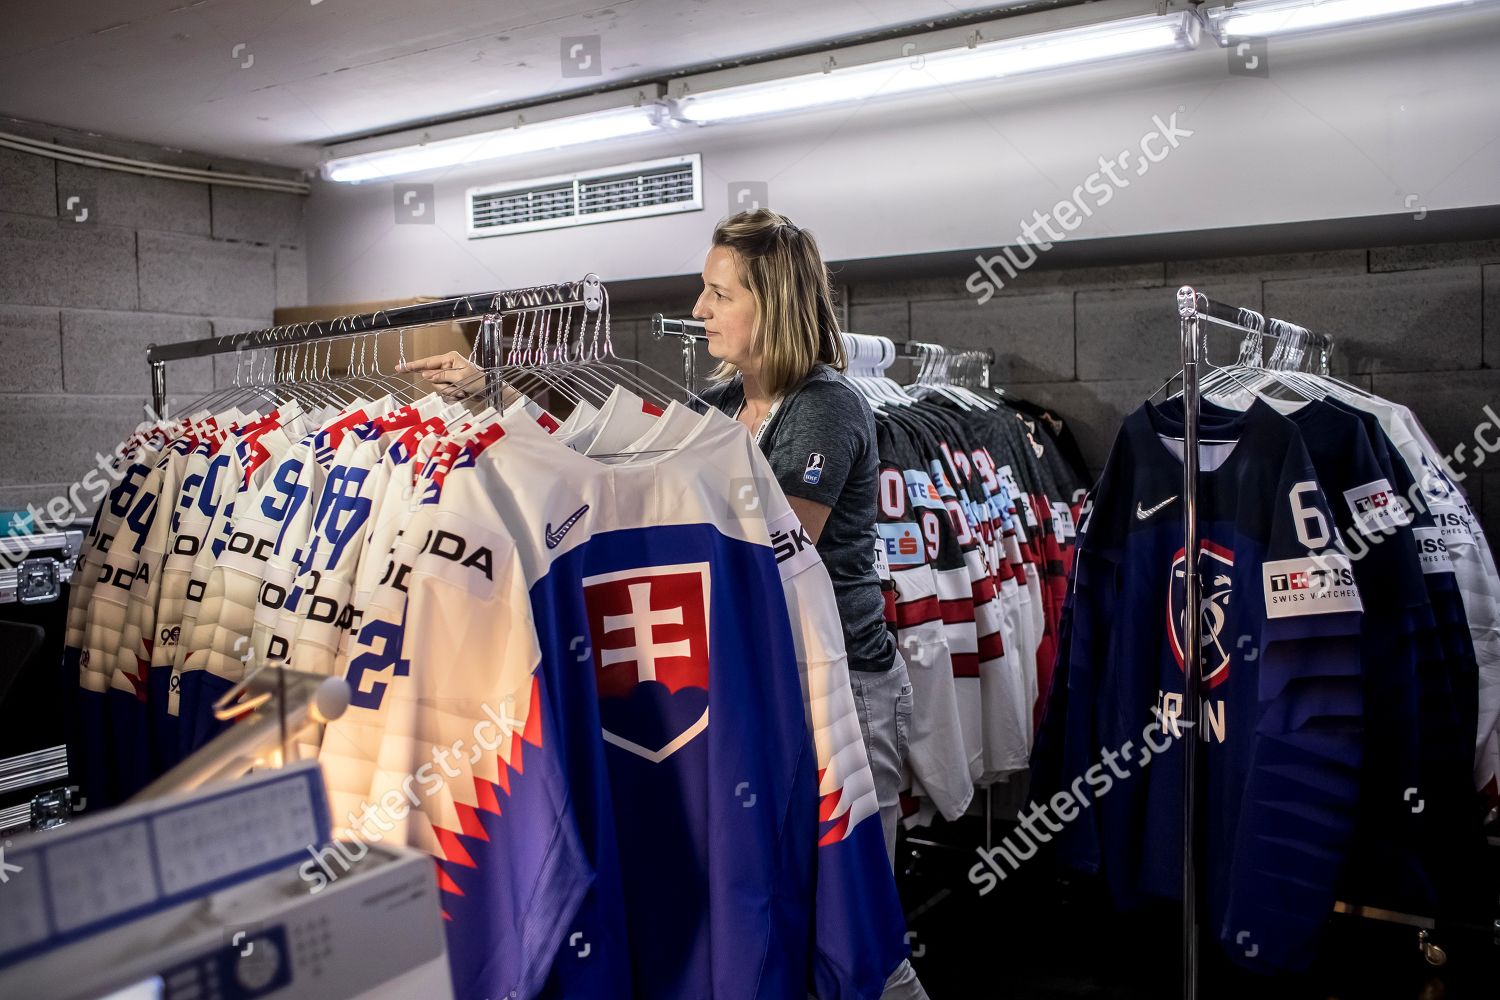 slovakia hockey jersey 2019